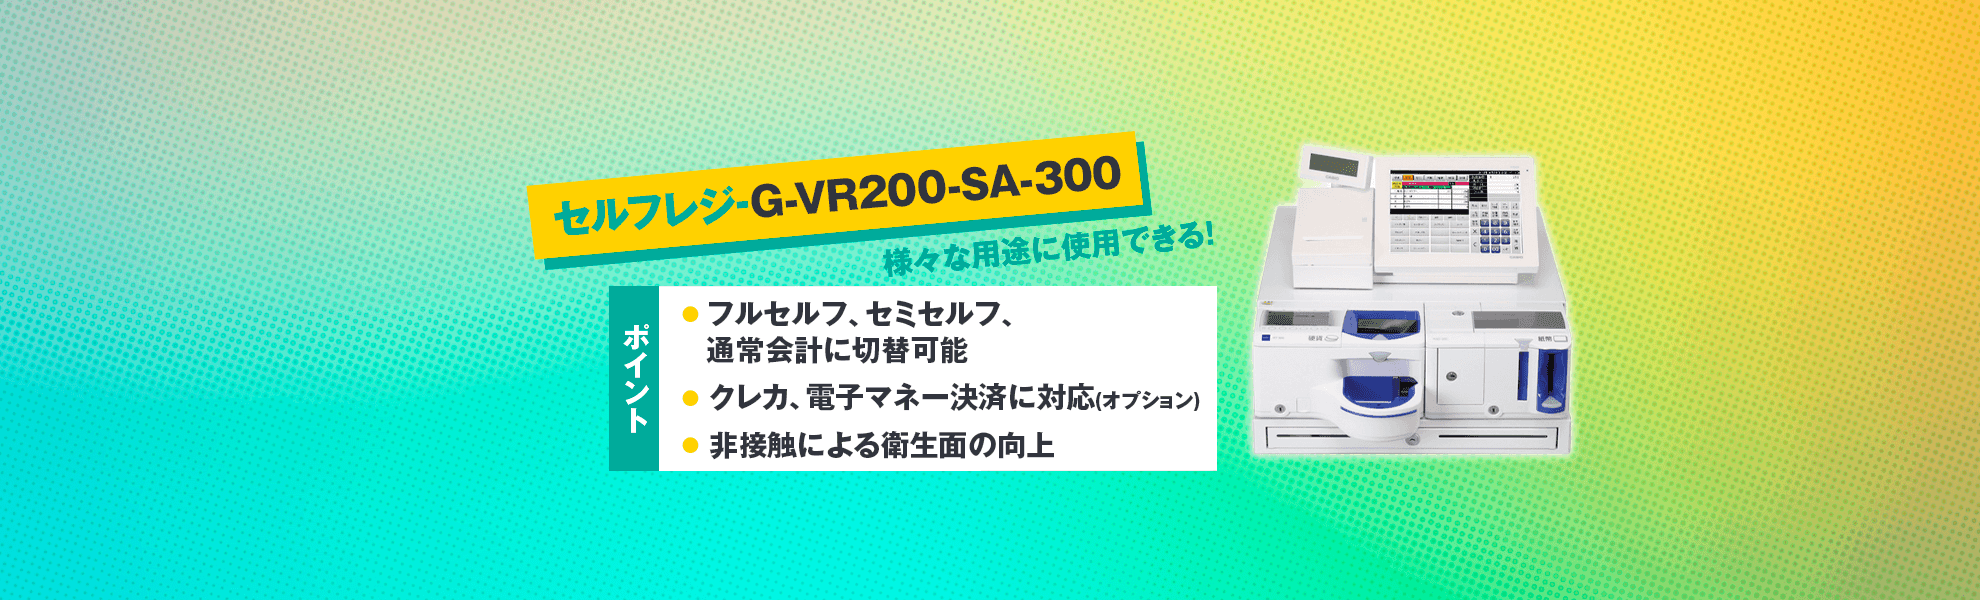 セルフレジタイプ G-VR-200-SA-300